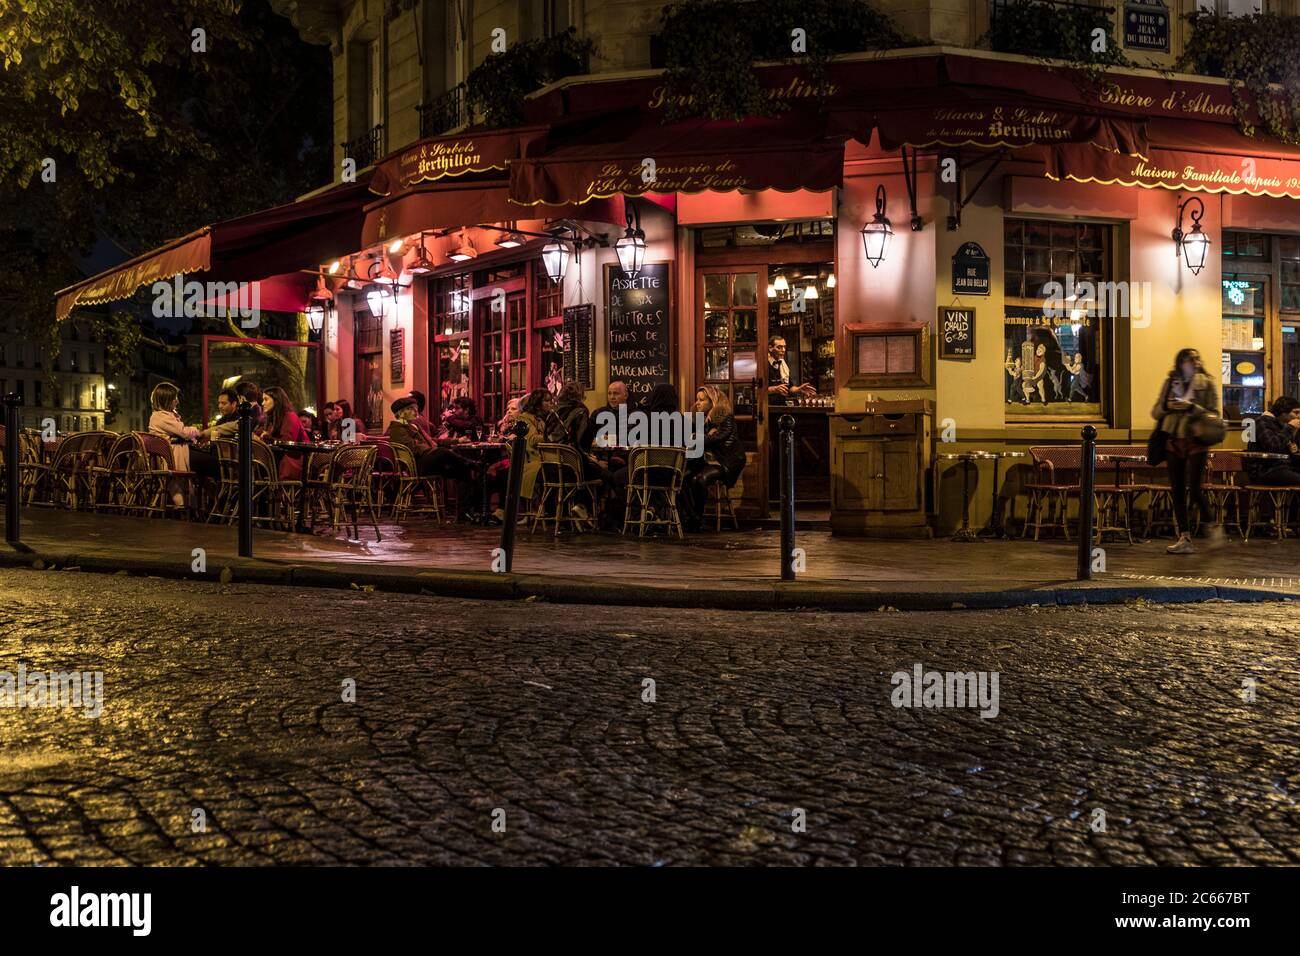 Prise de vue nocturne à Paris, France Banque D'Images